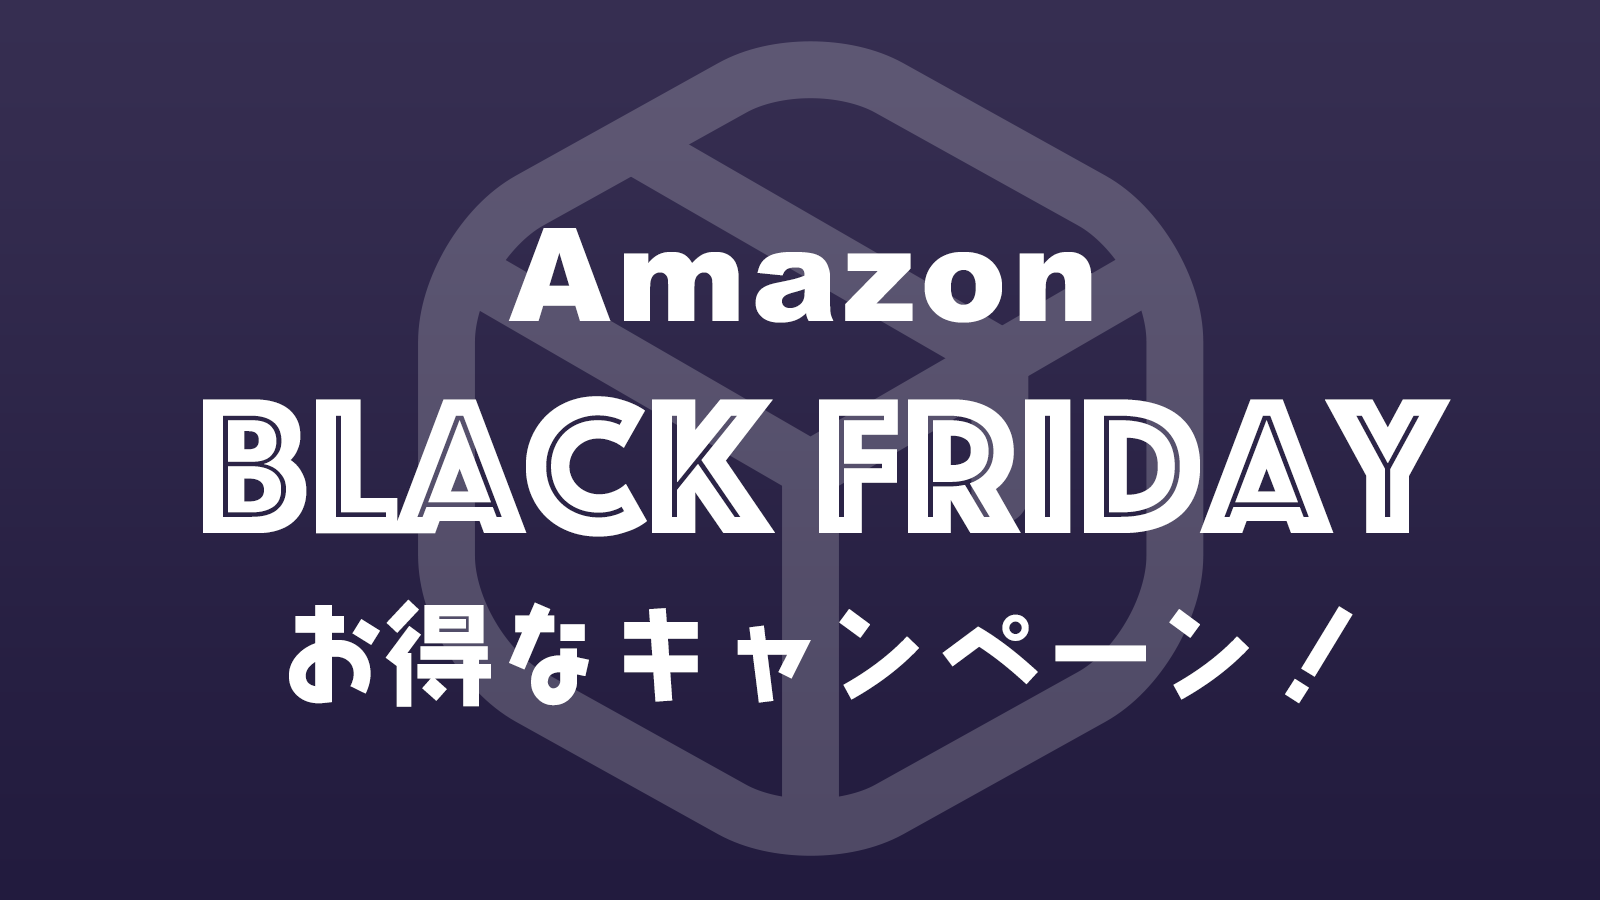 忘れずエントリー！Amazonブラックフライデーでお得に買い物をするために参加しておきたいキャンペーンまとめ！